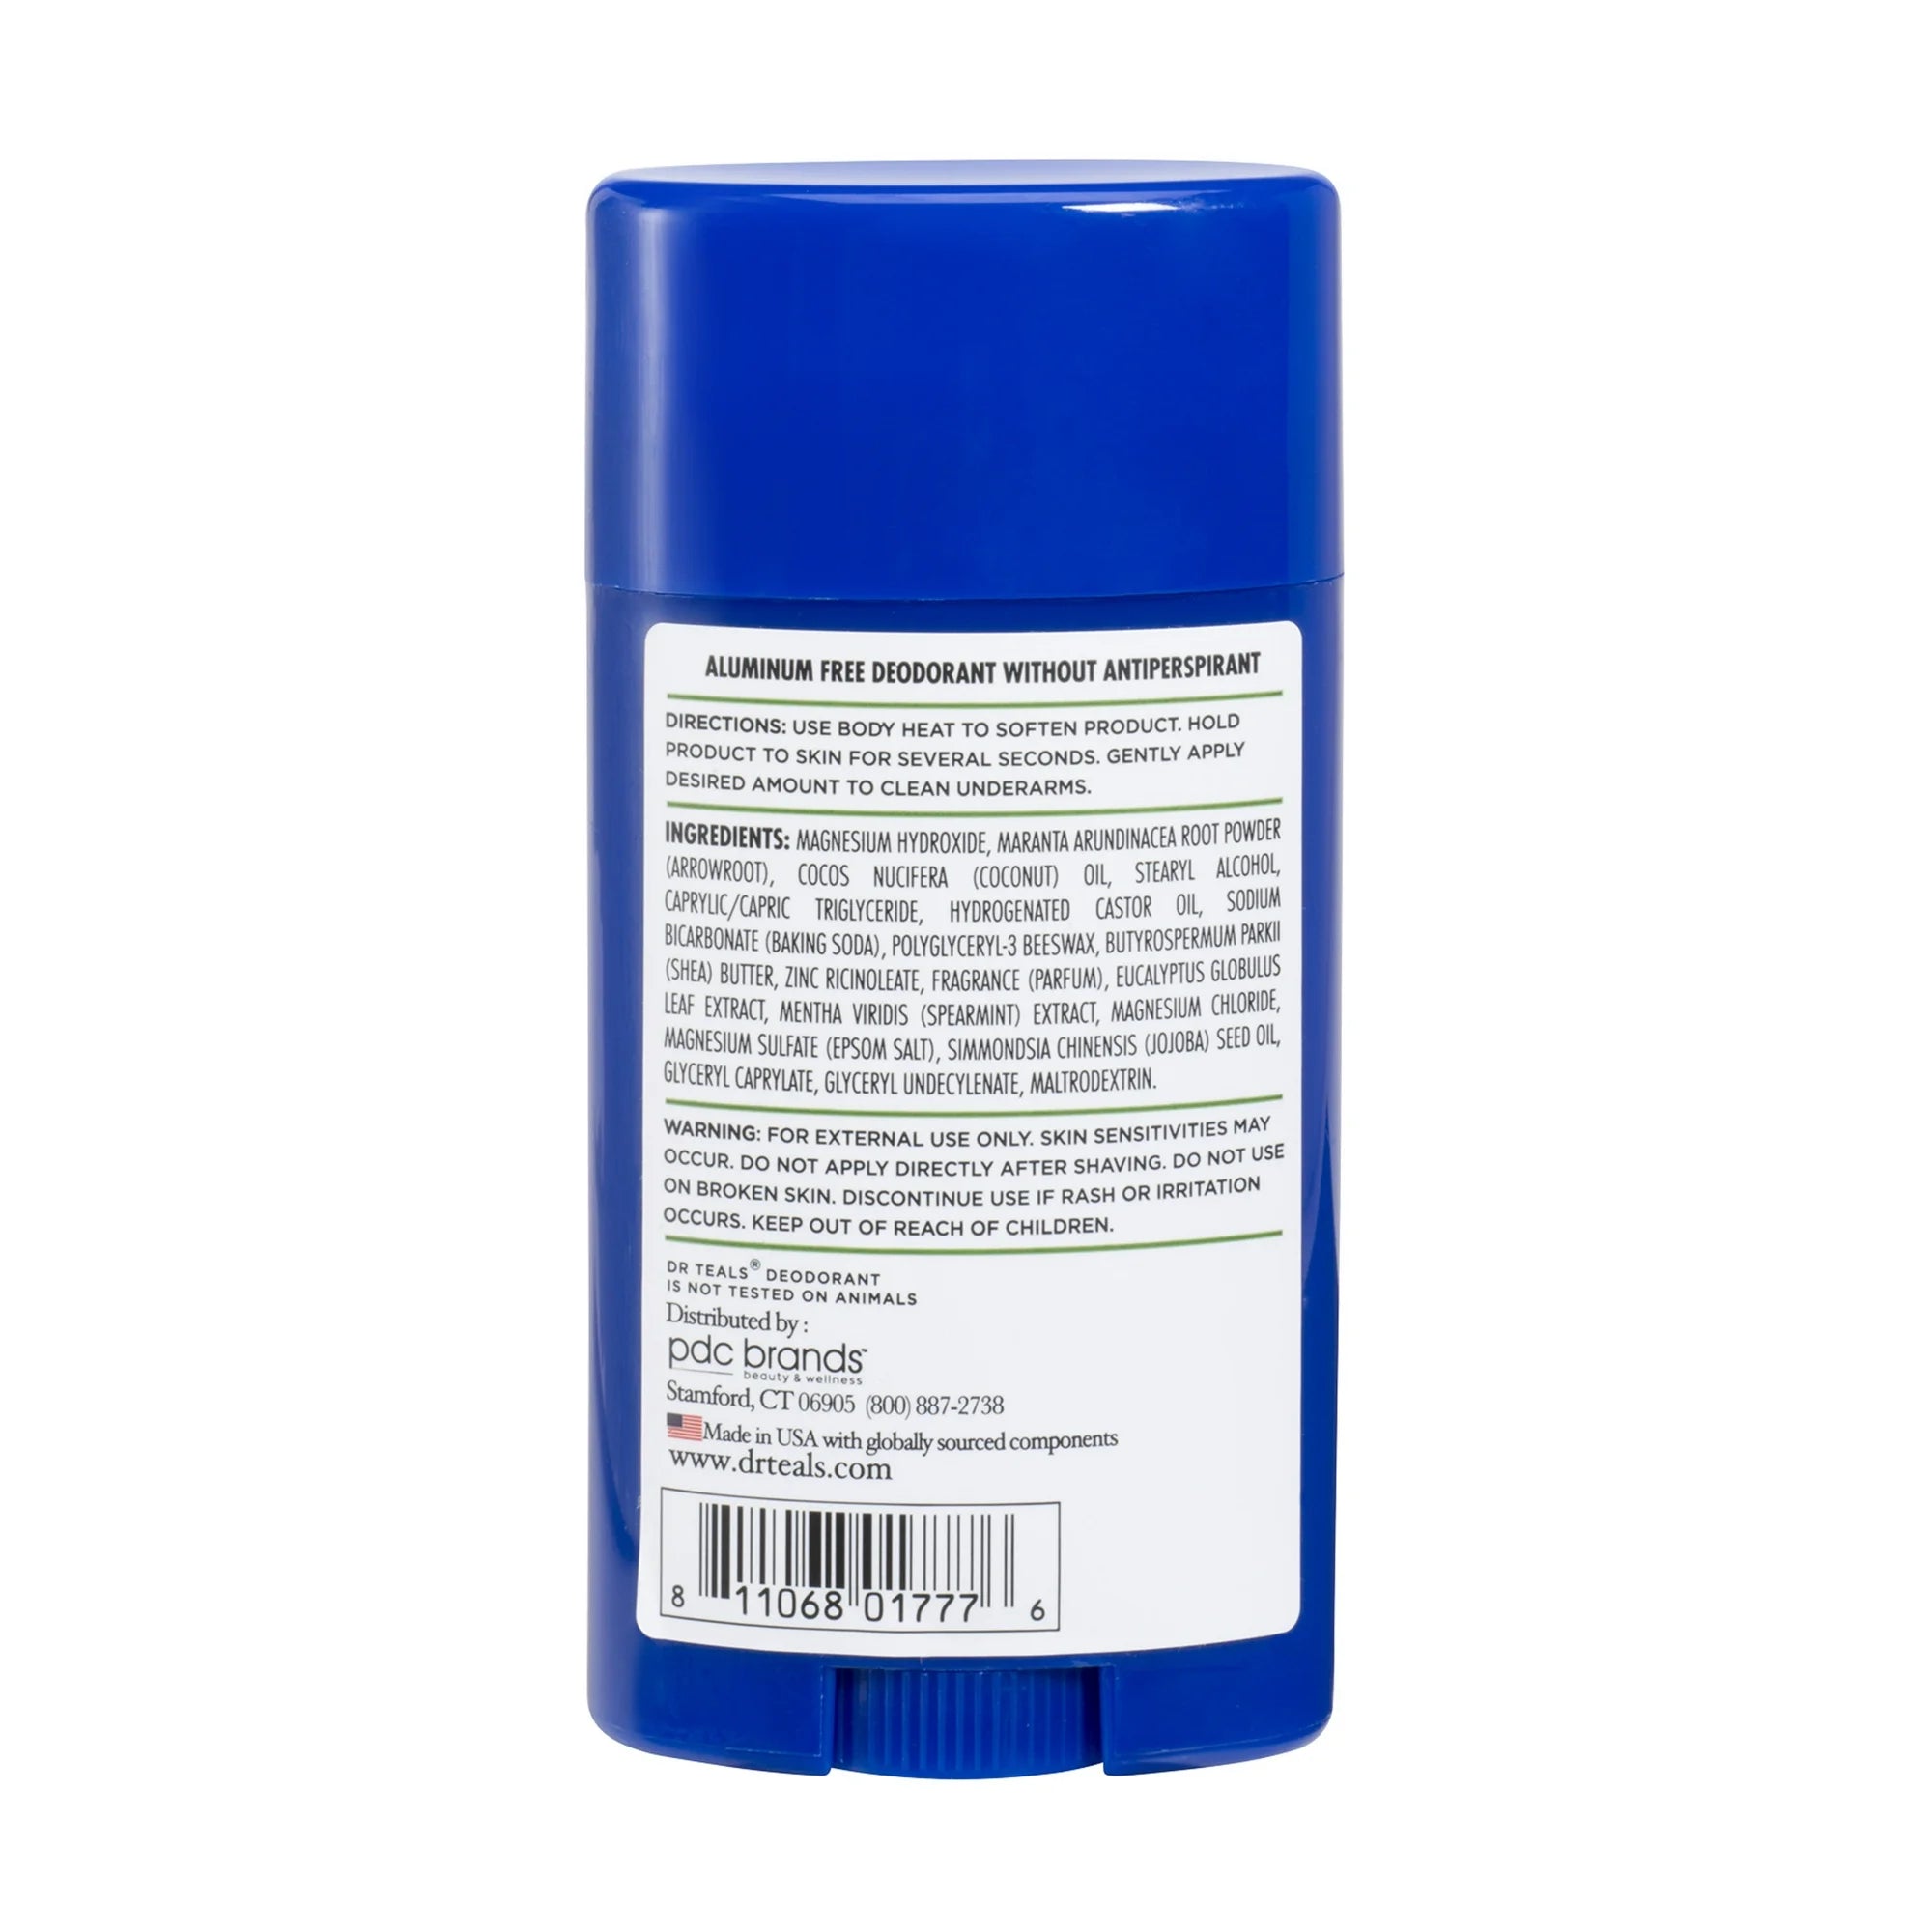 Dr Teal's Eucalyptus 2.65 Oz Deodorant